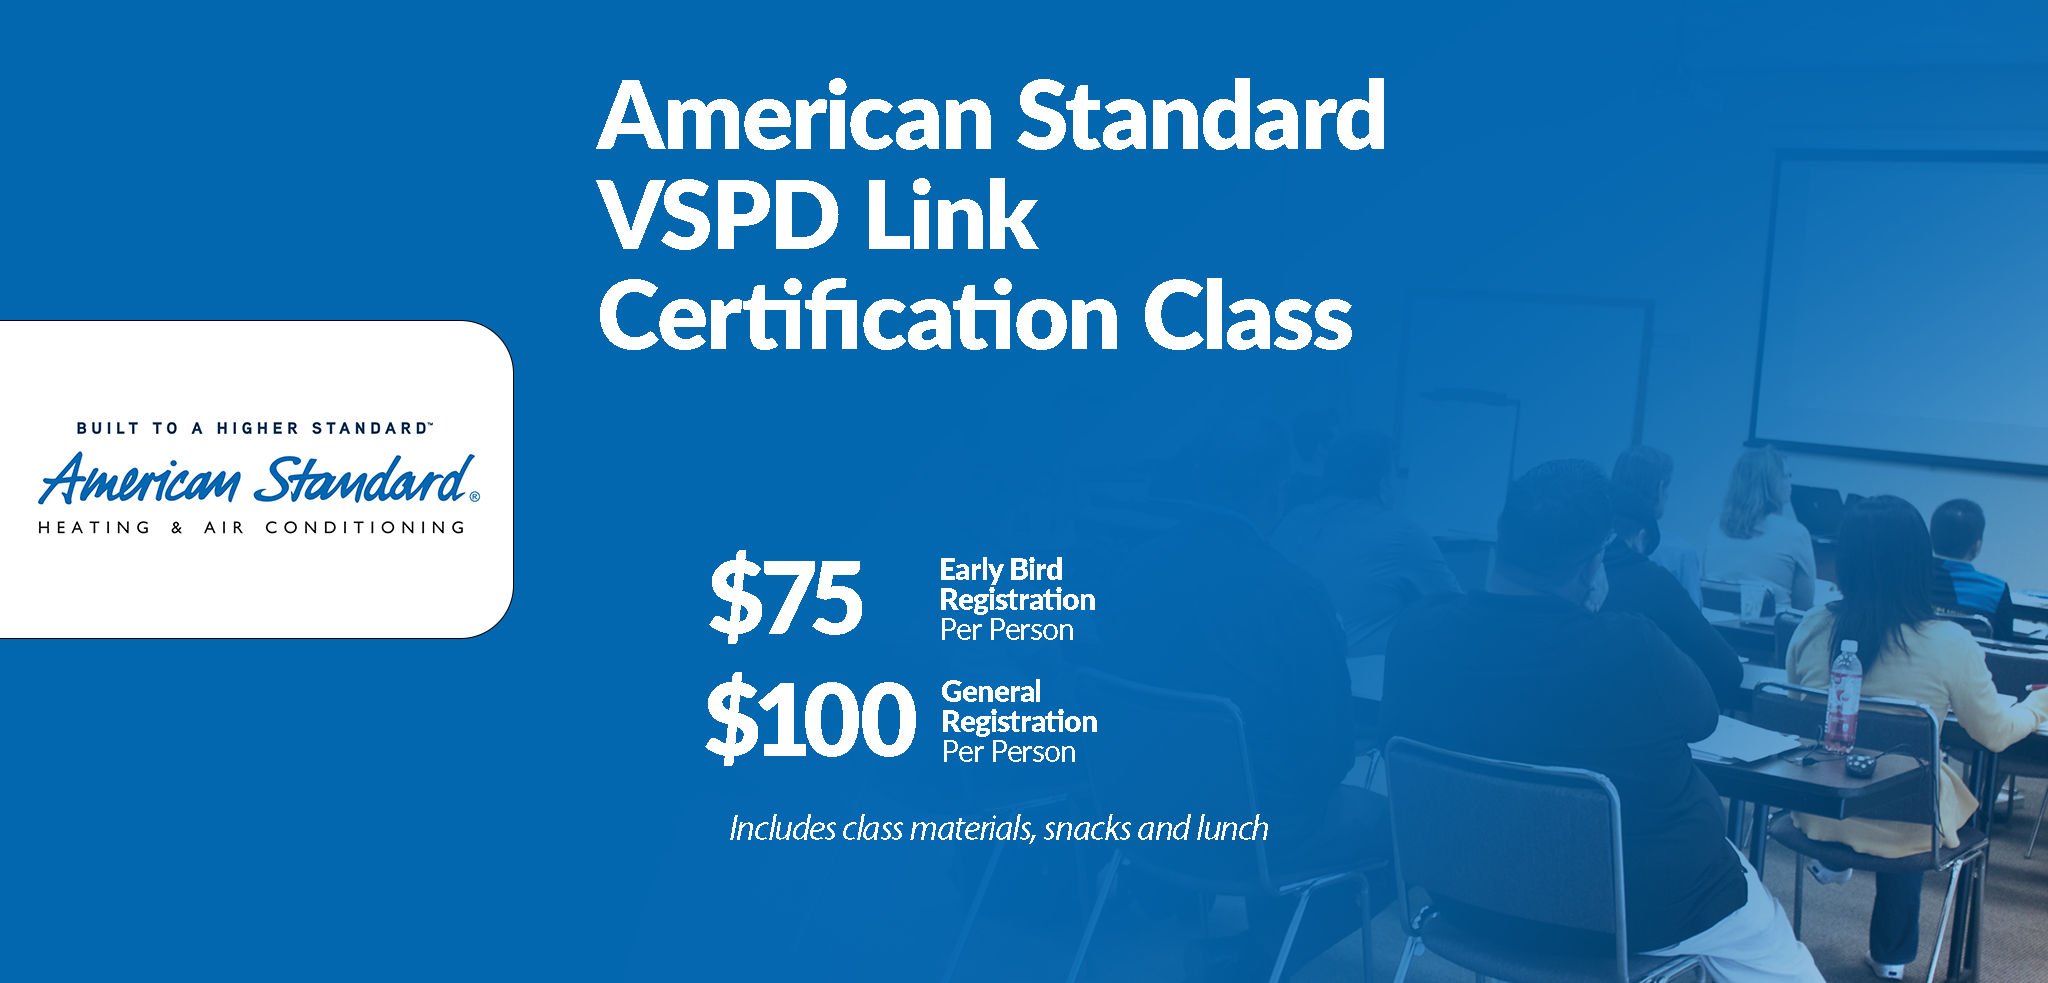 American Standard VSPD Link Certification Class